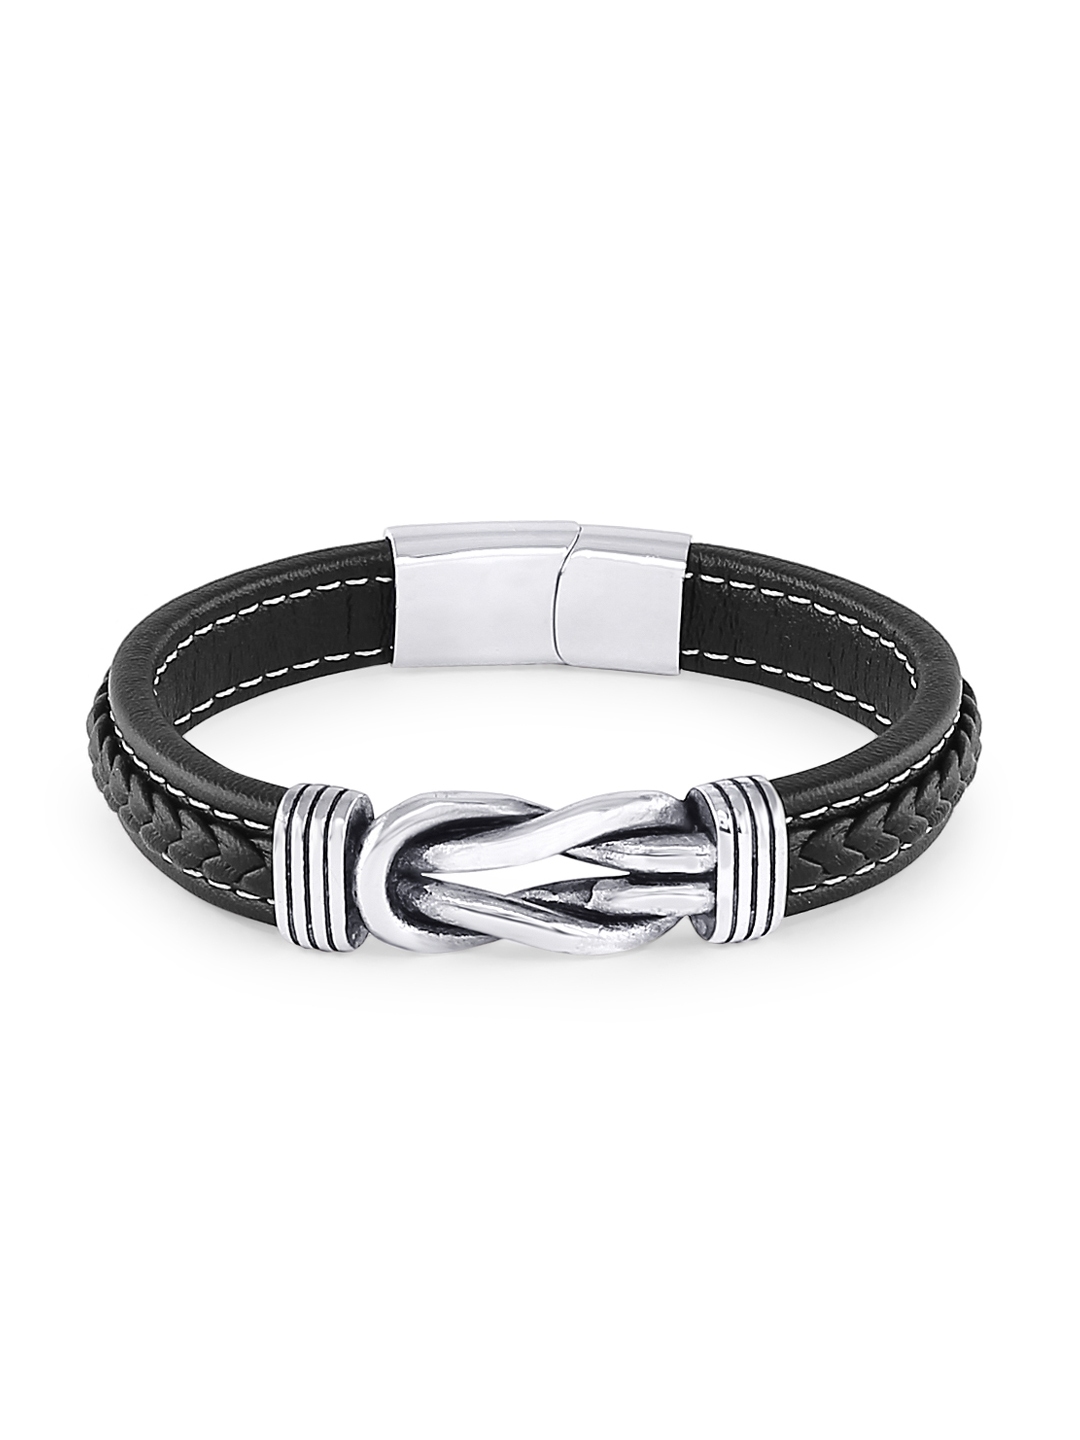 SOHI Bangle Bracelets and Cuffs  Buy SOHI Black Leather Wraparound Bracelet  Pack of 4 Online  Nykaa Fashion